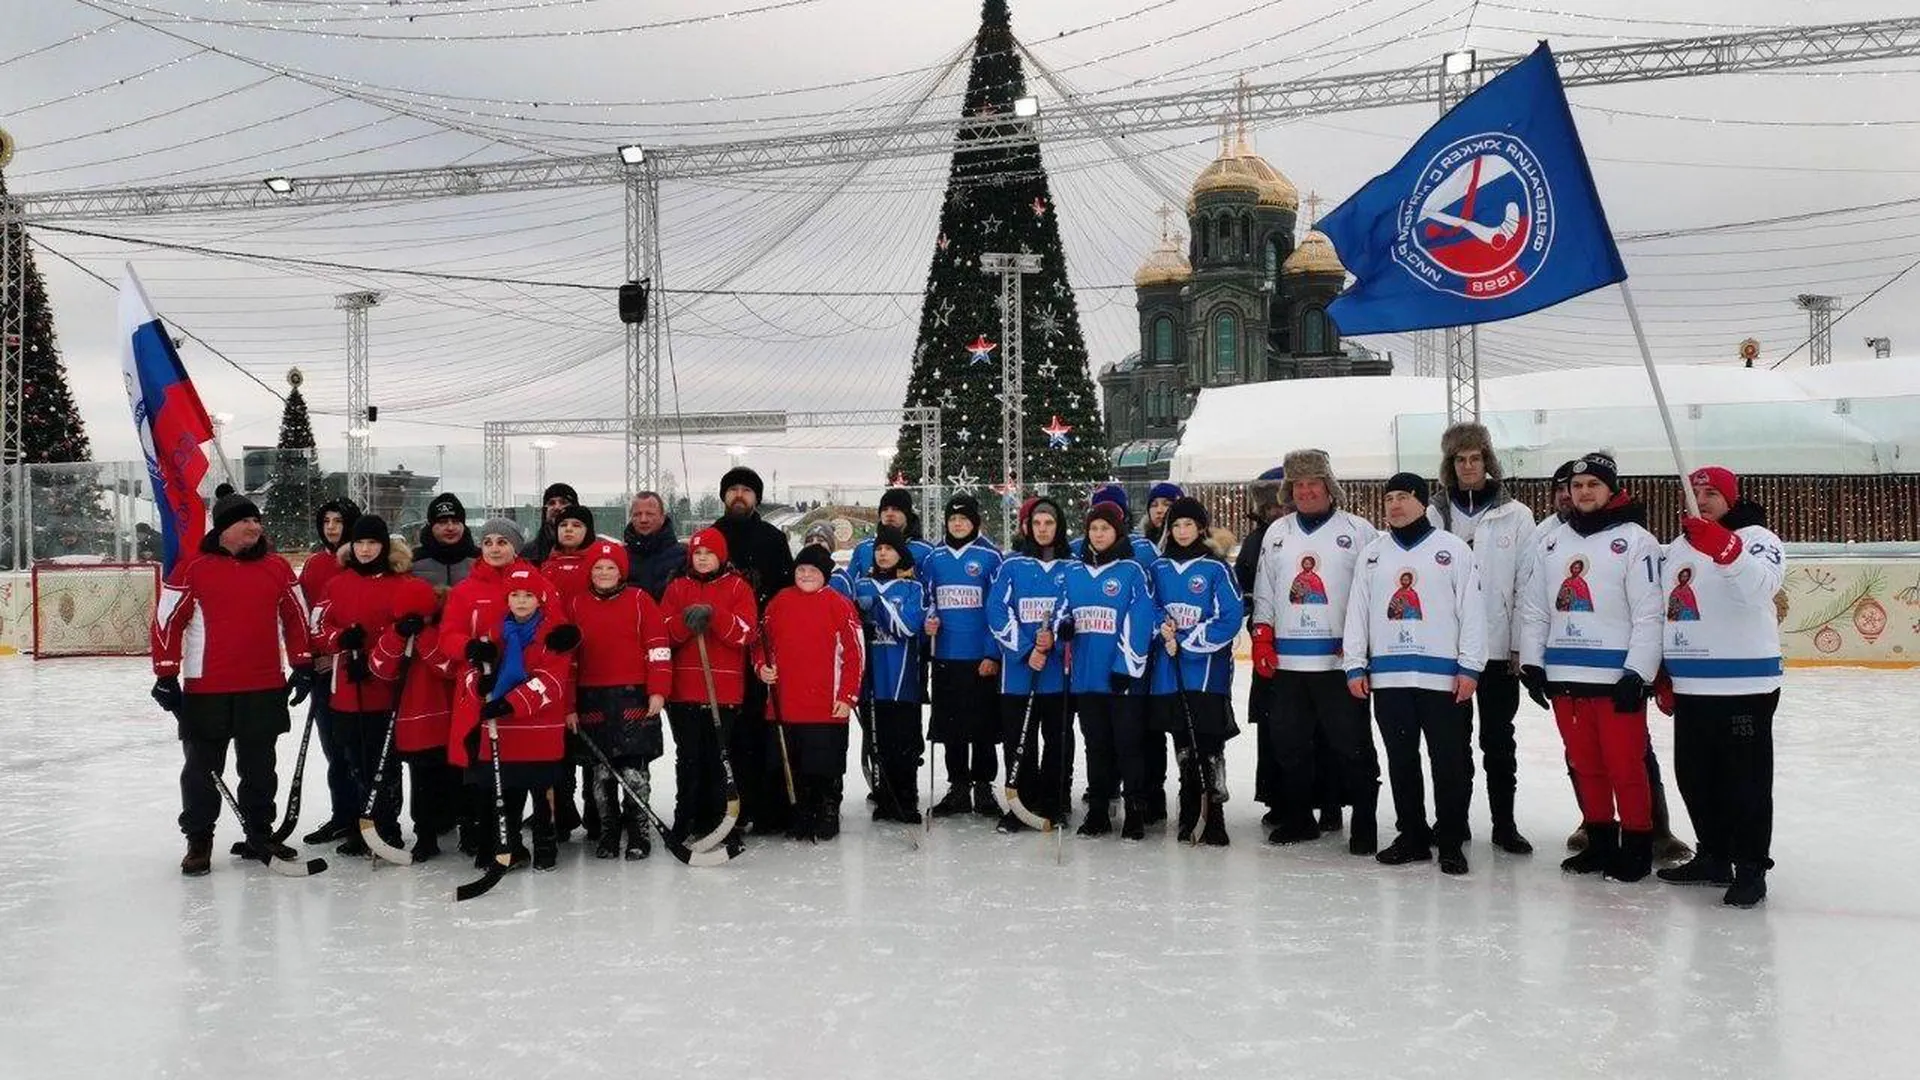 Ребята из Донецкой Народной Республики сыграли в хоккей на катке в парке «Патриот» ив Одинцово